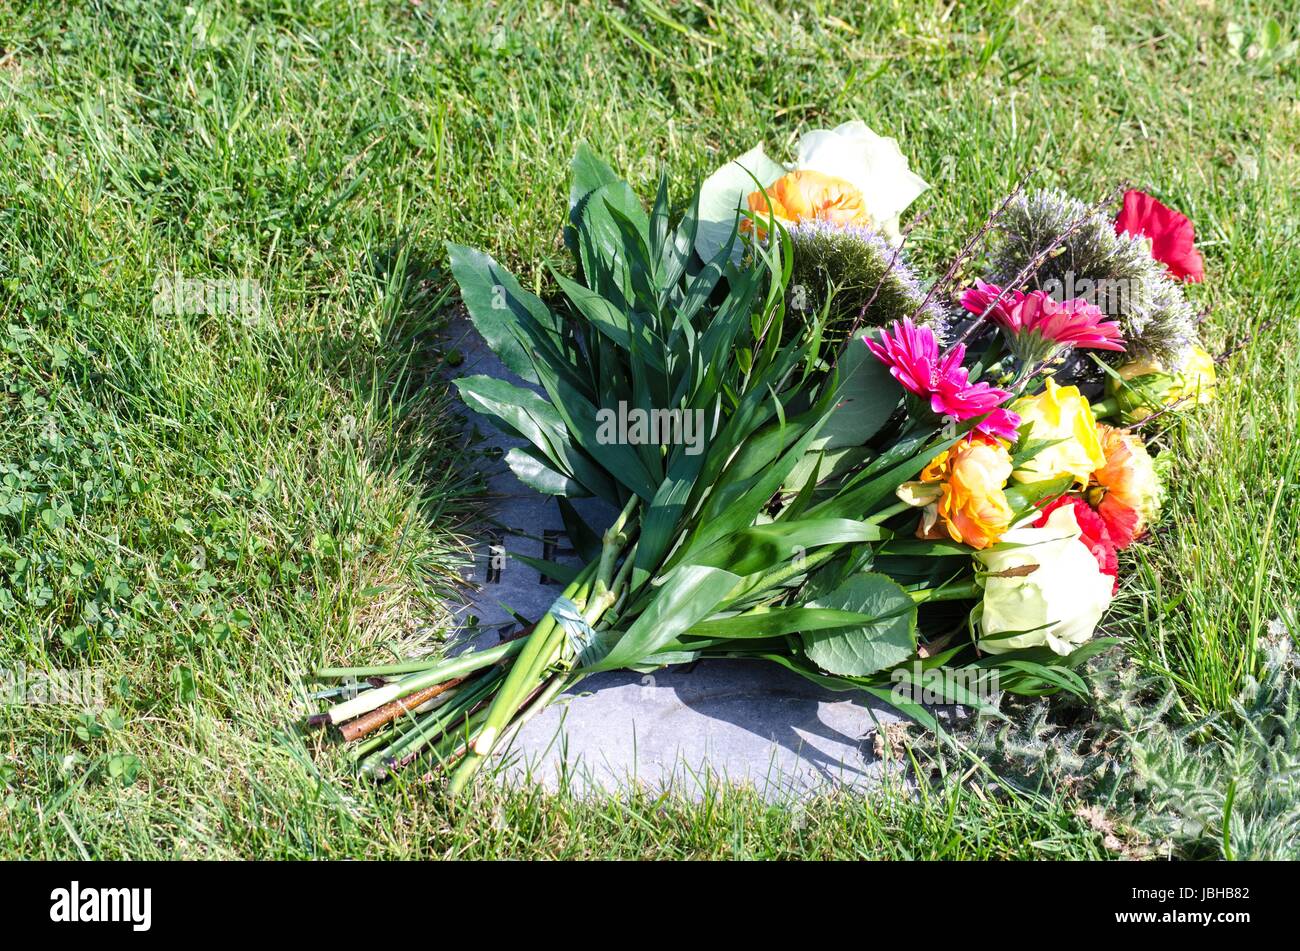 Schöner bunter Blumenstrauß auf einem Grabstein   Beautiful bouquet of flowers on a grave stone Stock Photo